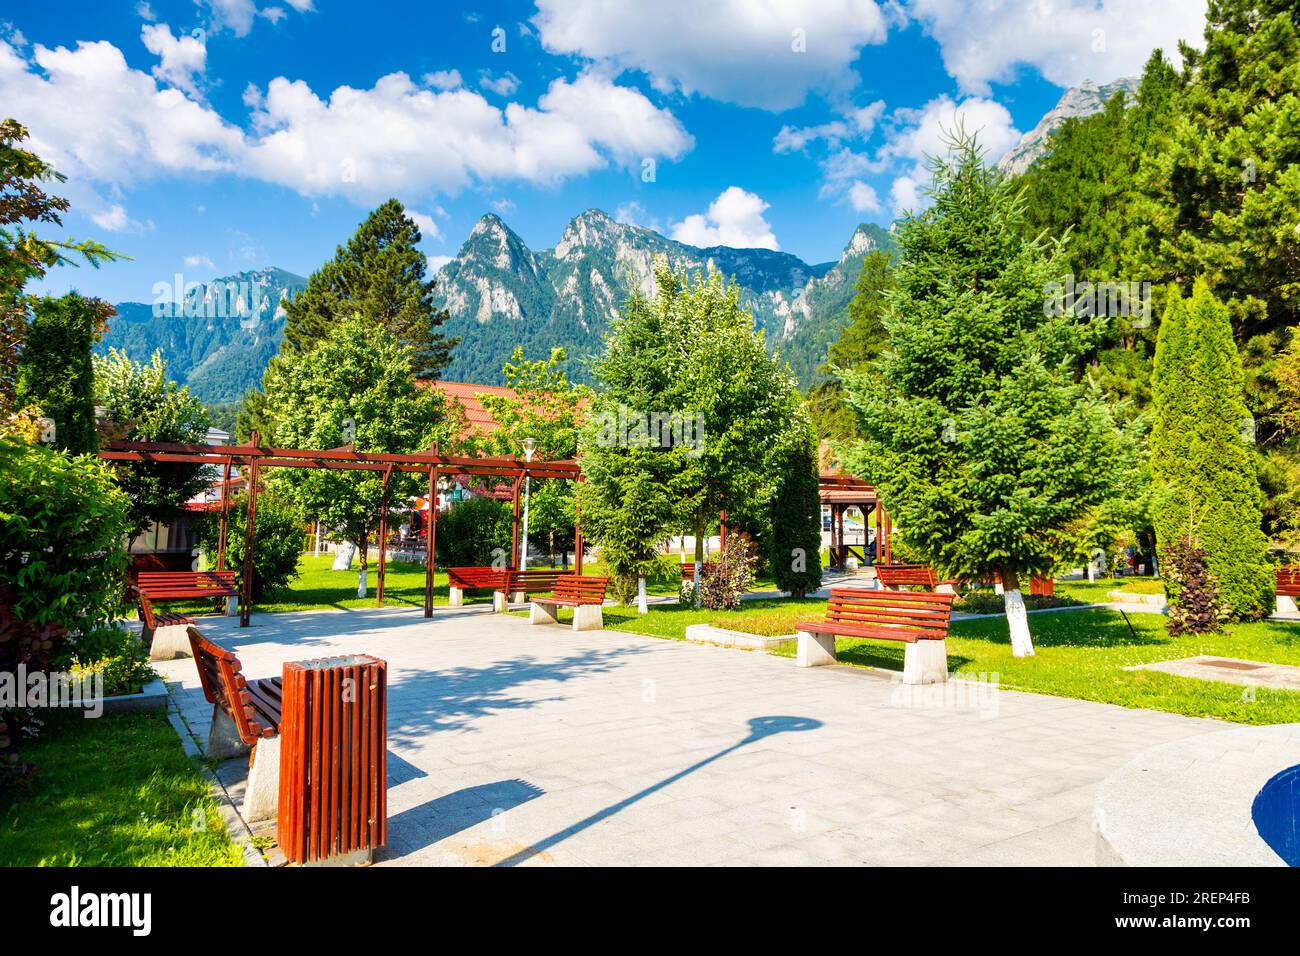 Busteni Park with views of the Bucegi Mountains, Carpathian Mountains, Busteni, Romania Stock Photo